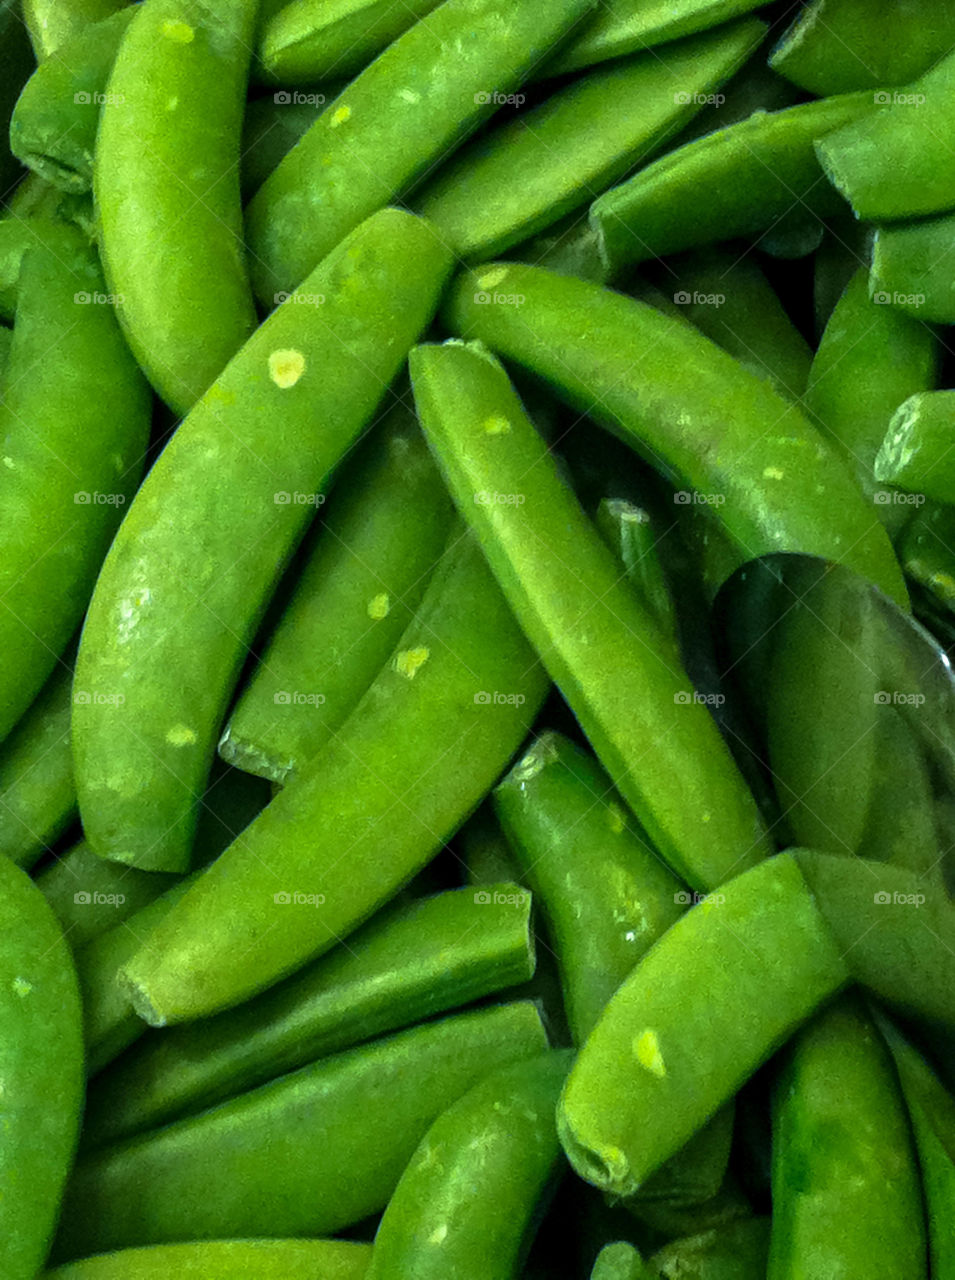 Snap Peas closeup 